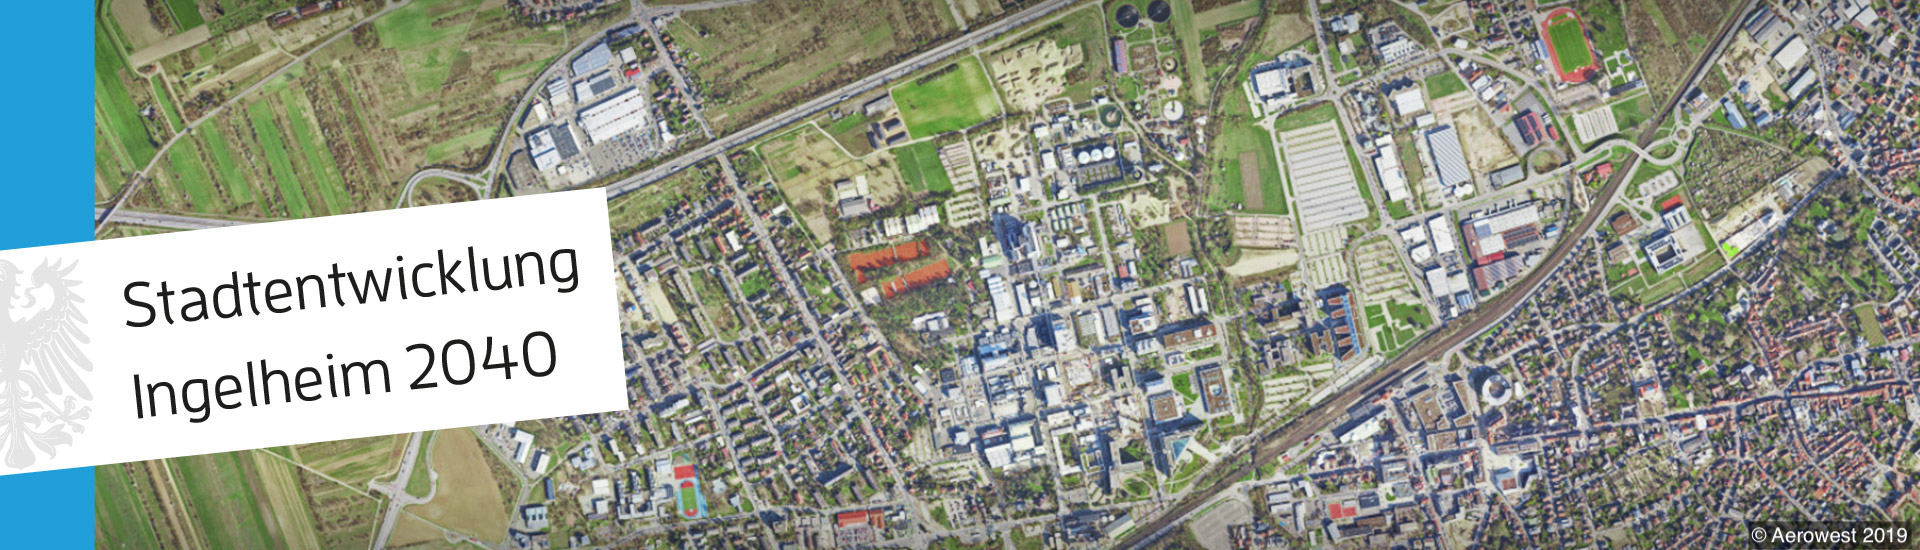 Luftbild von Ingelheim und Text "Stadtentwicklung Ingelheim 2040". (c) Aerowest 2019